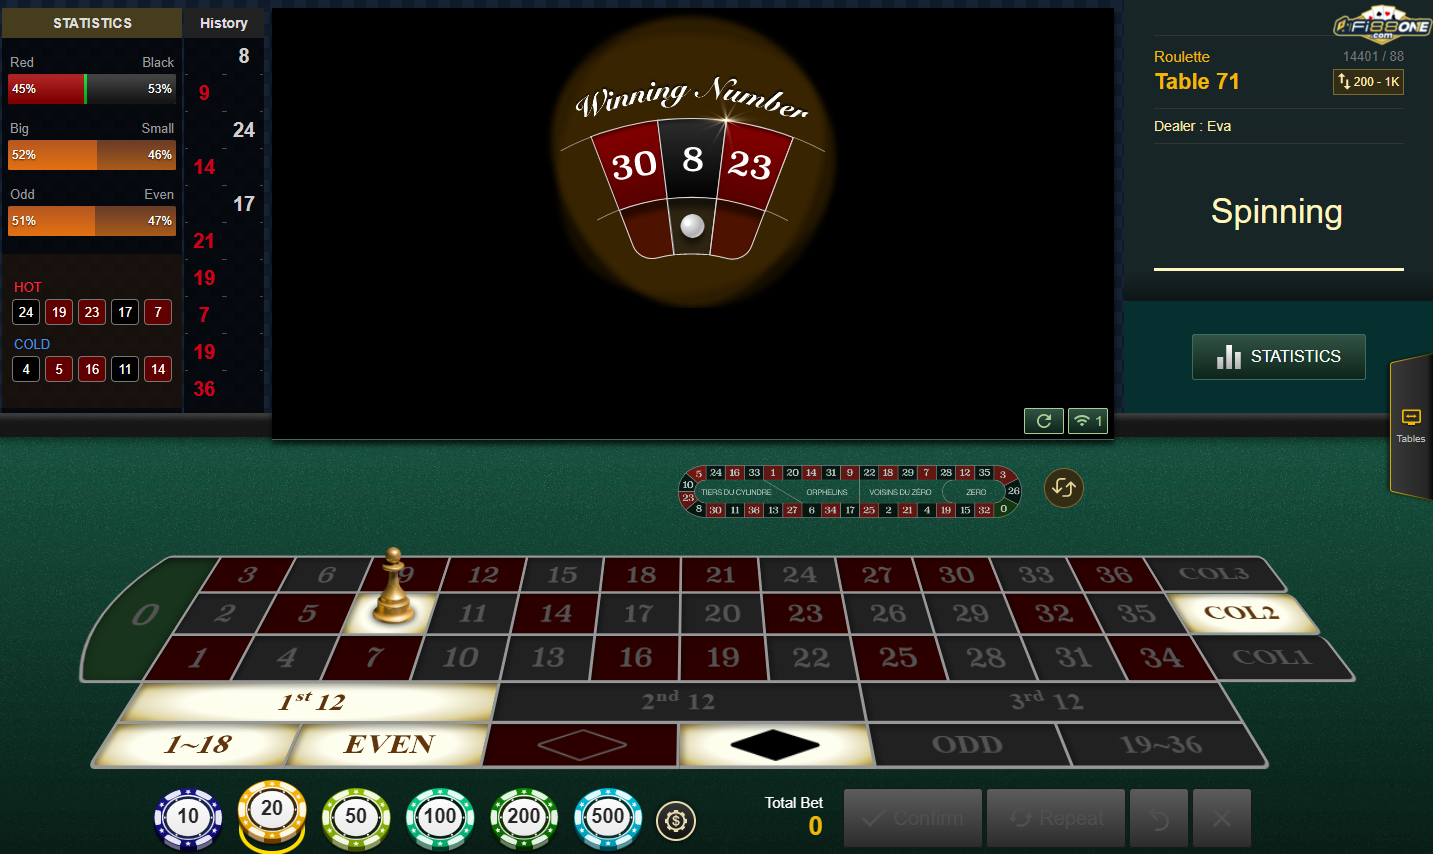 Microgaming Casino